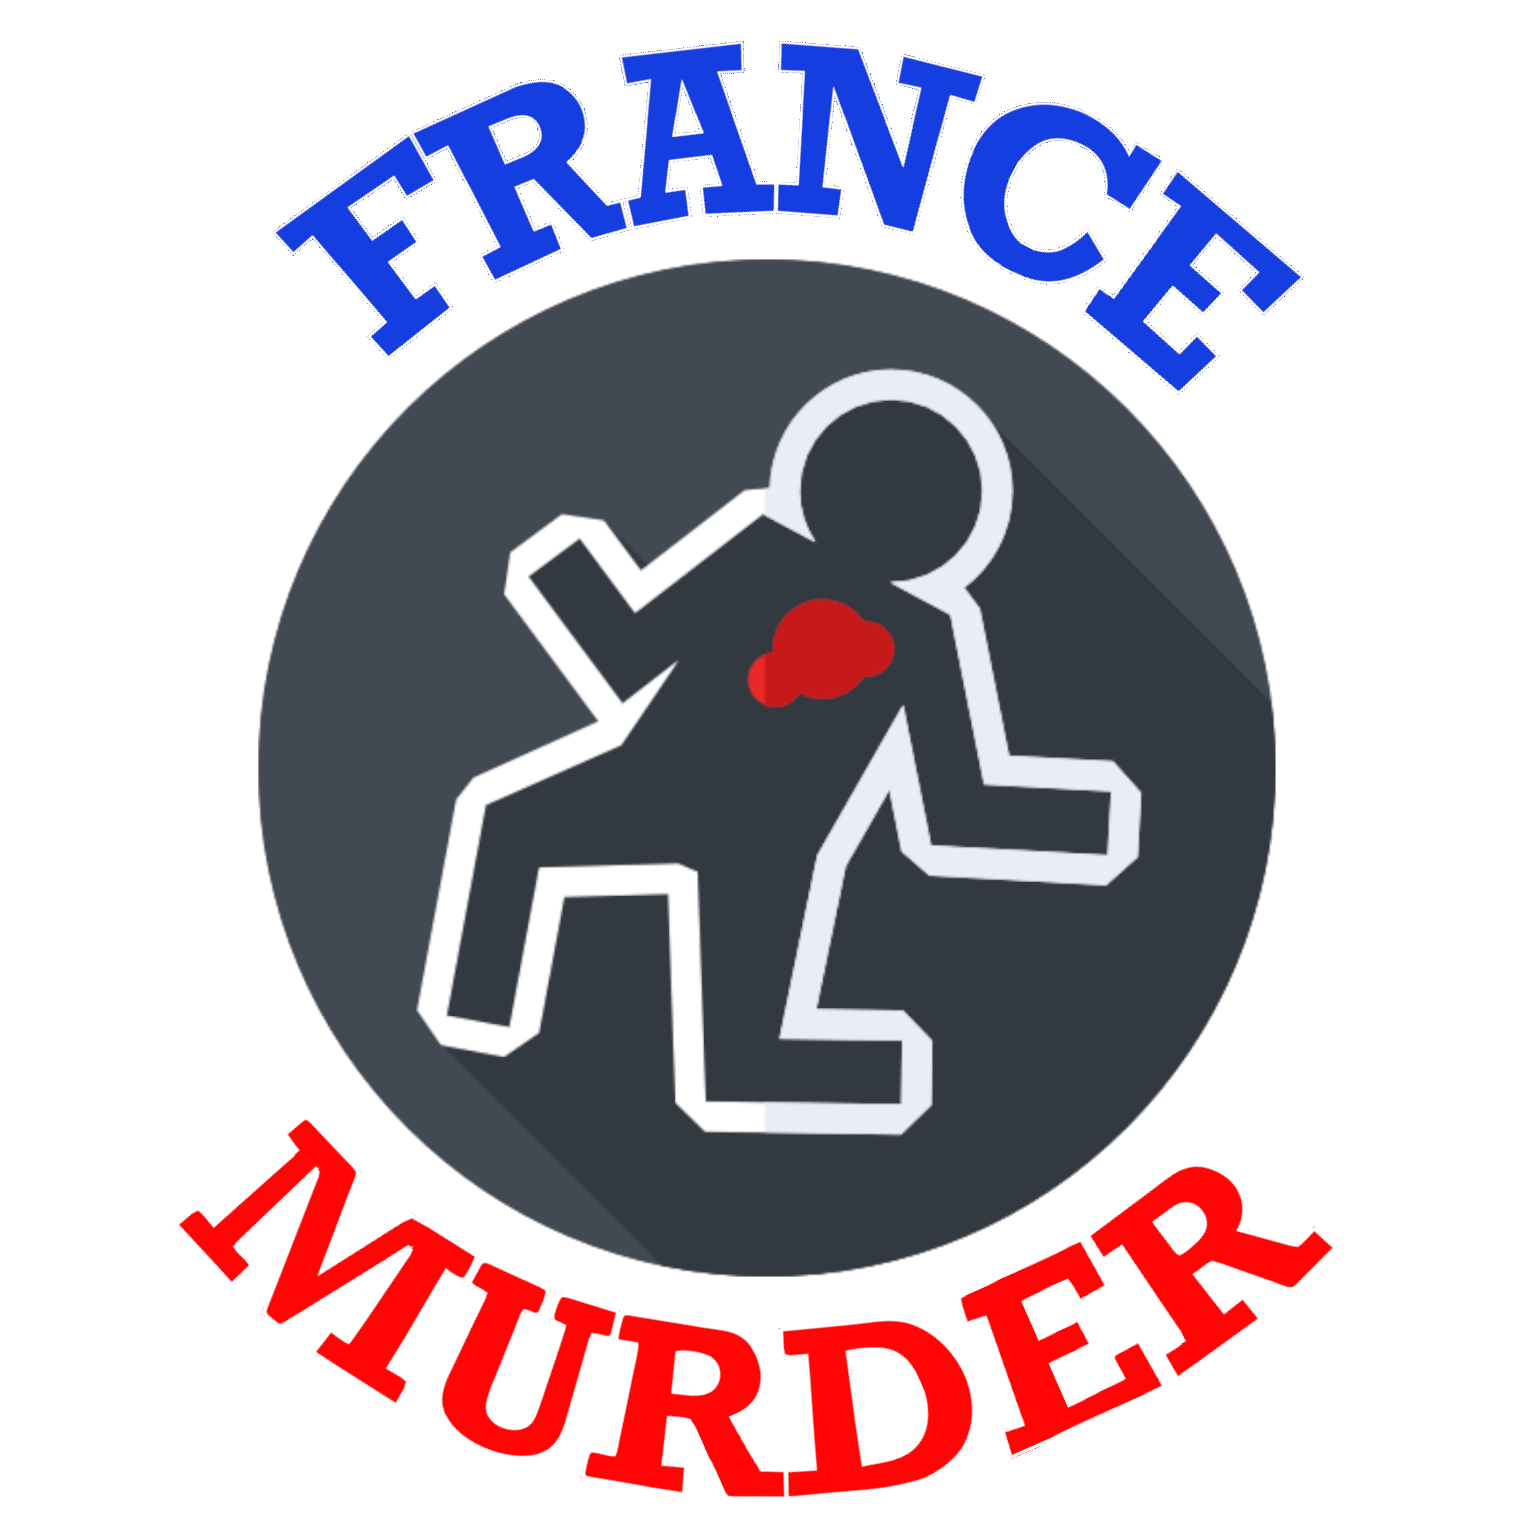 France Murder